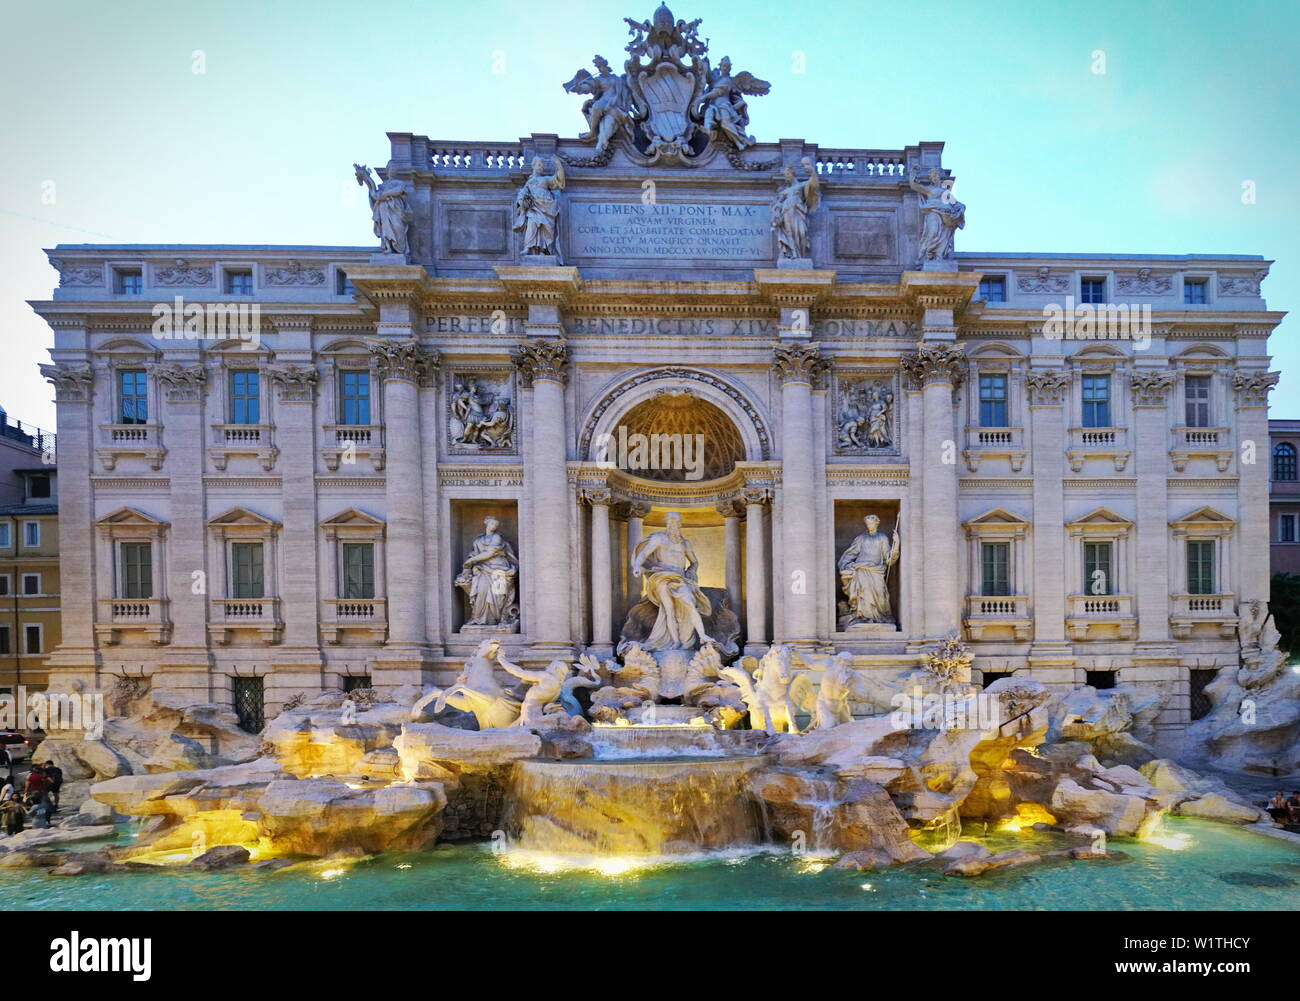 Berühmt und einer der schönsten Brunnen Roms - Trevi Brunnen (Fontana di Trevi). Italien Stockfoto